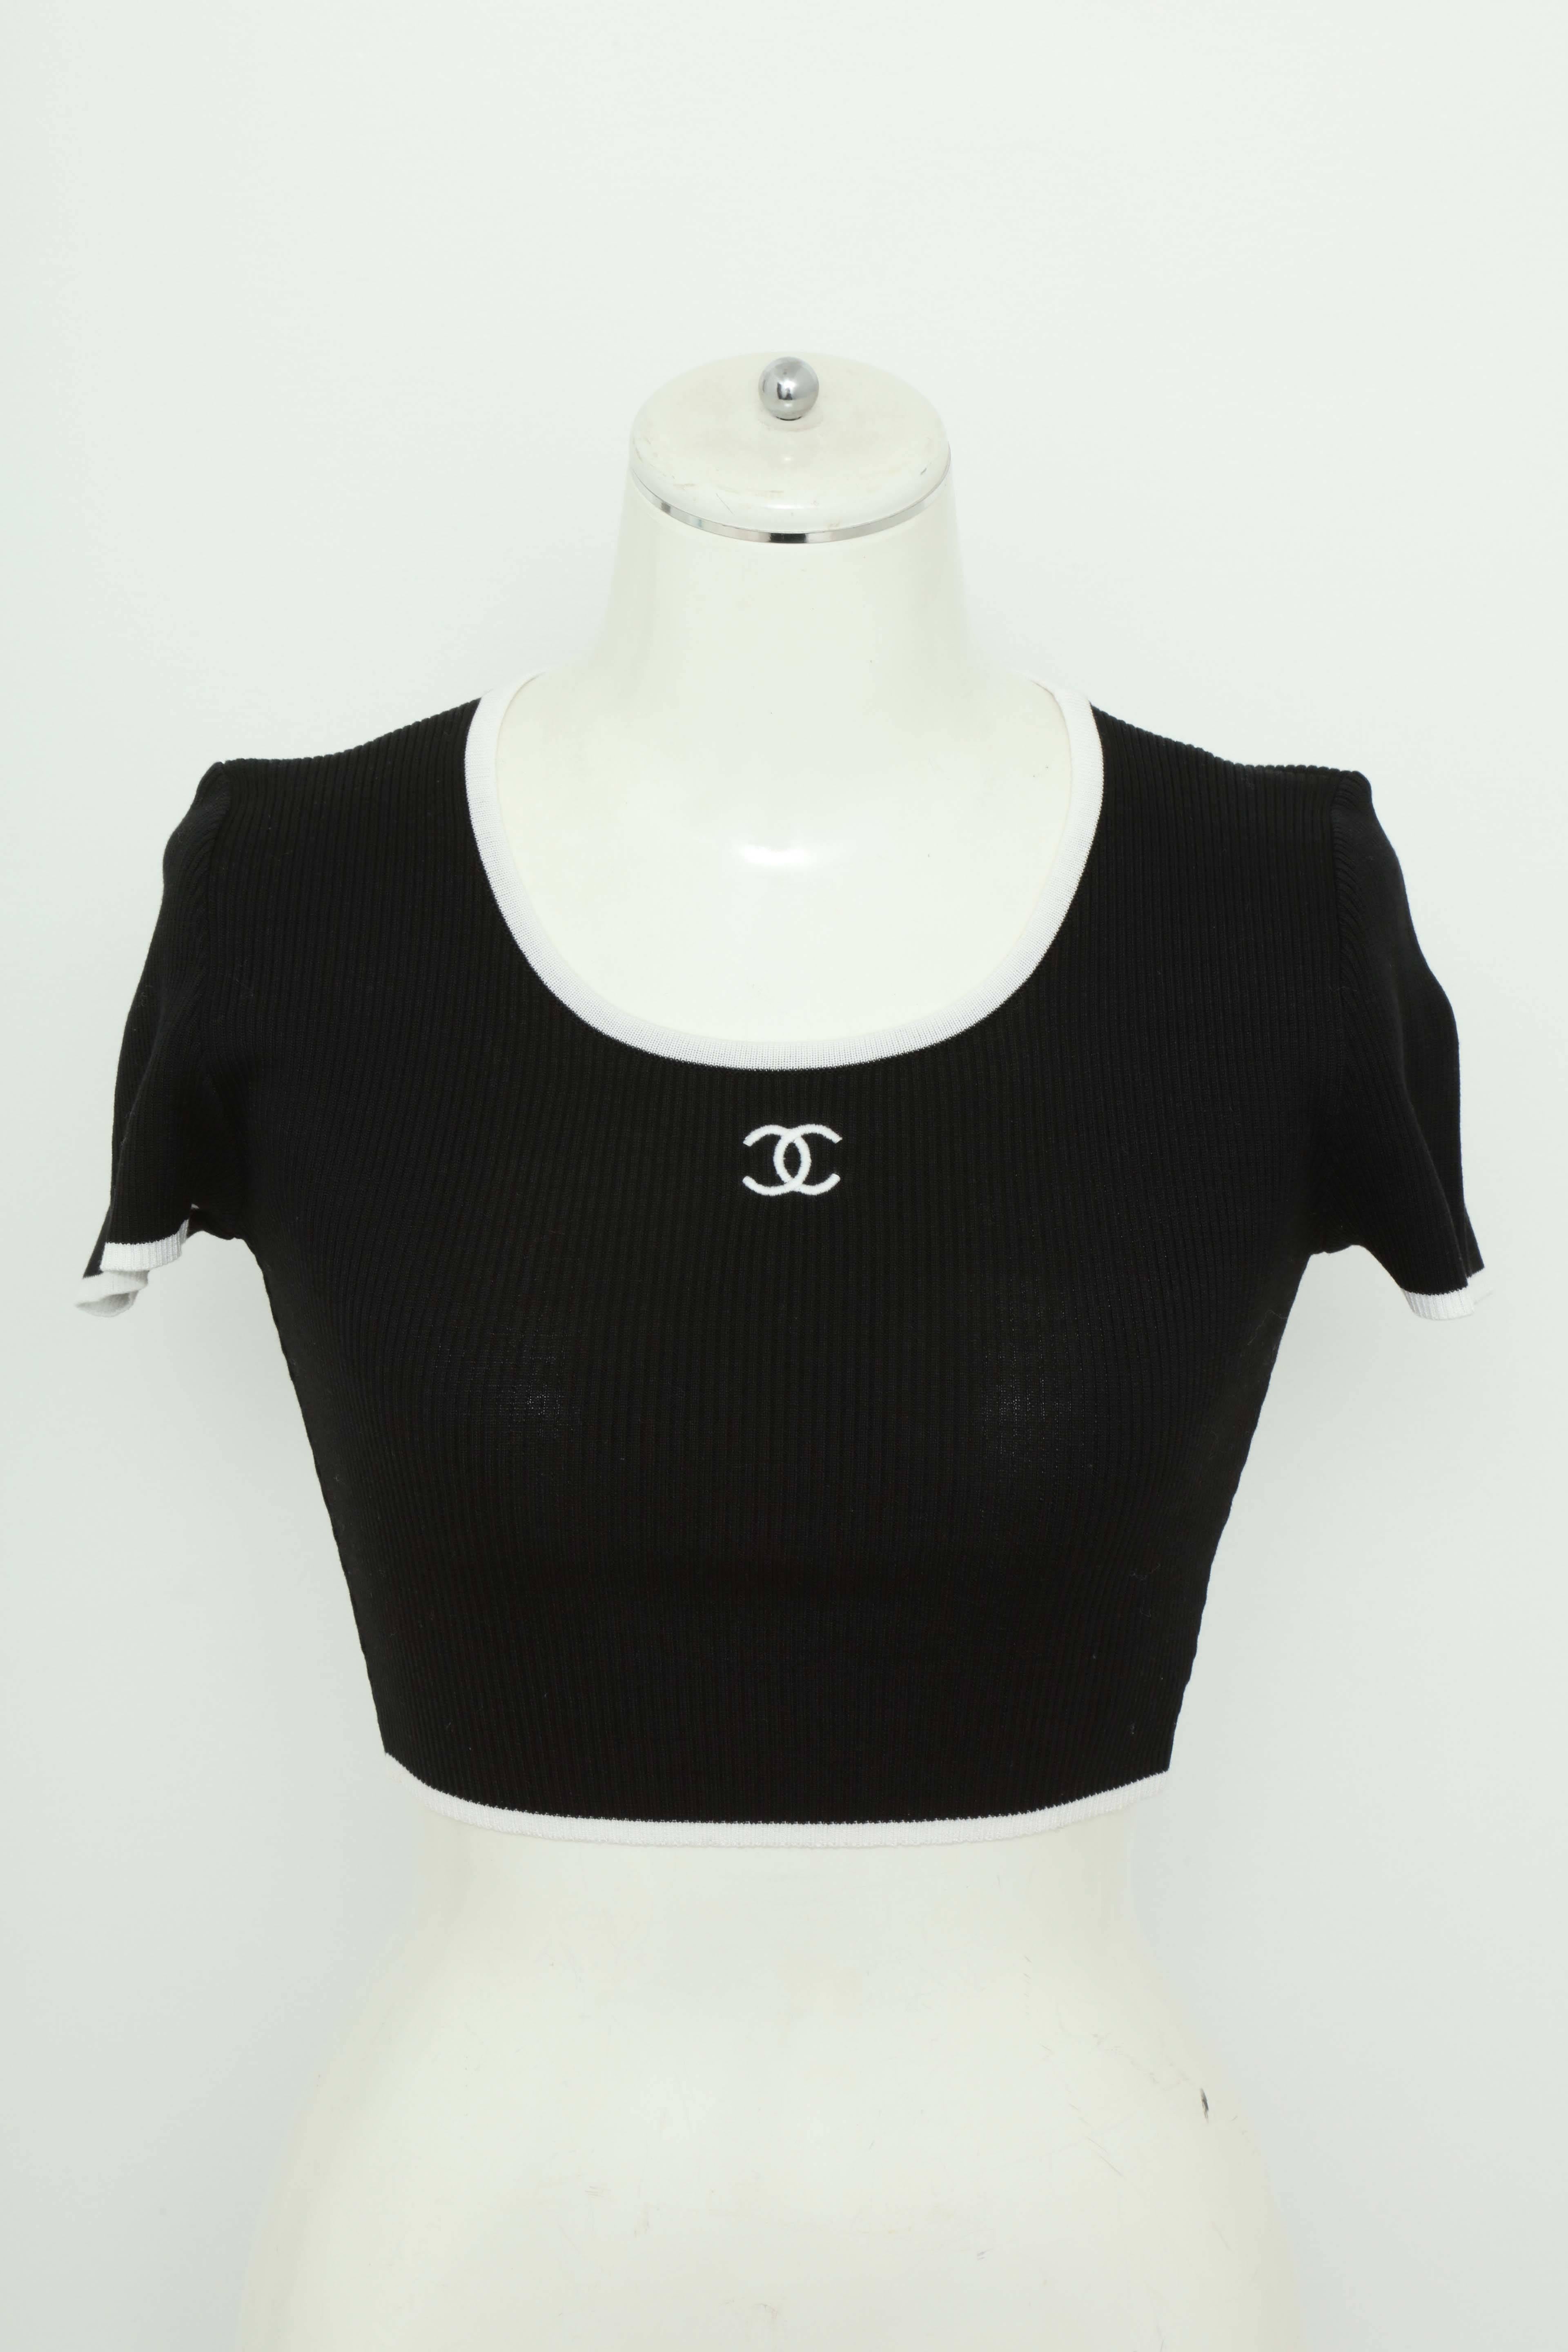 Sehr seltener schwarzer Chanel Zwillingsstrickpullover mit CC-Knöpfen. Französisch Größe 38.